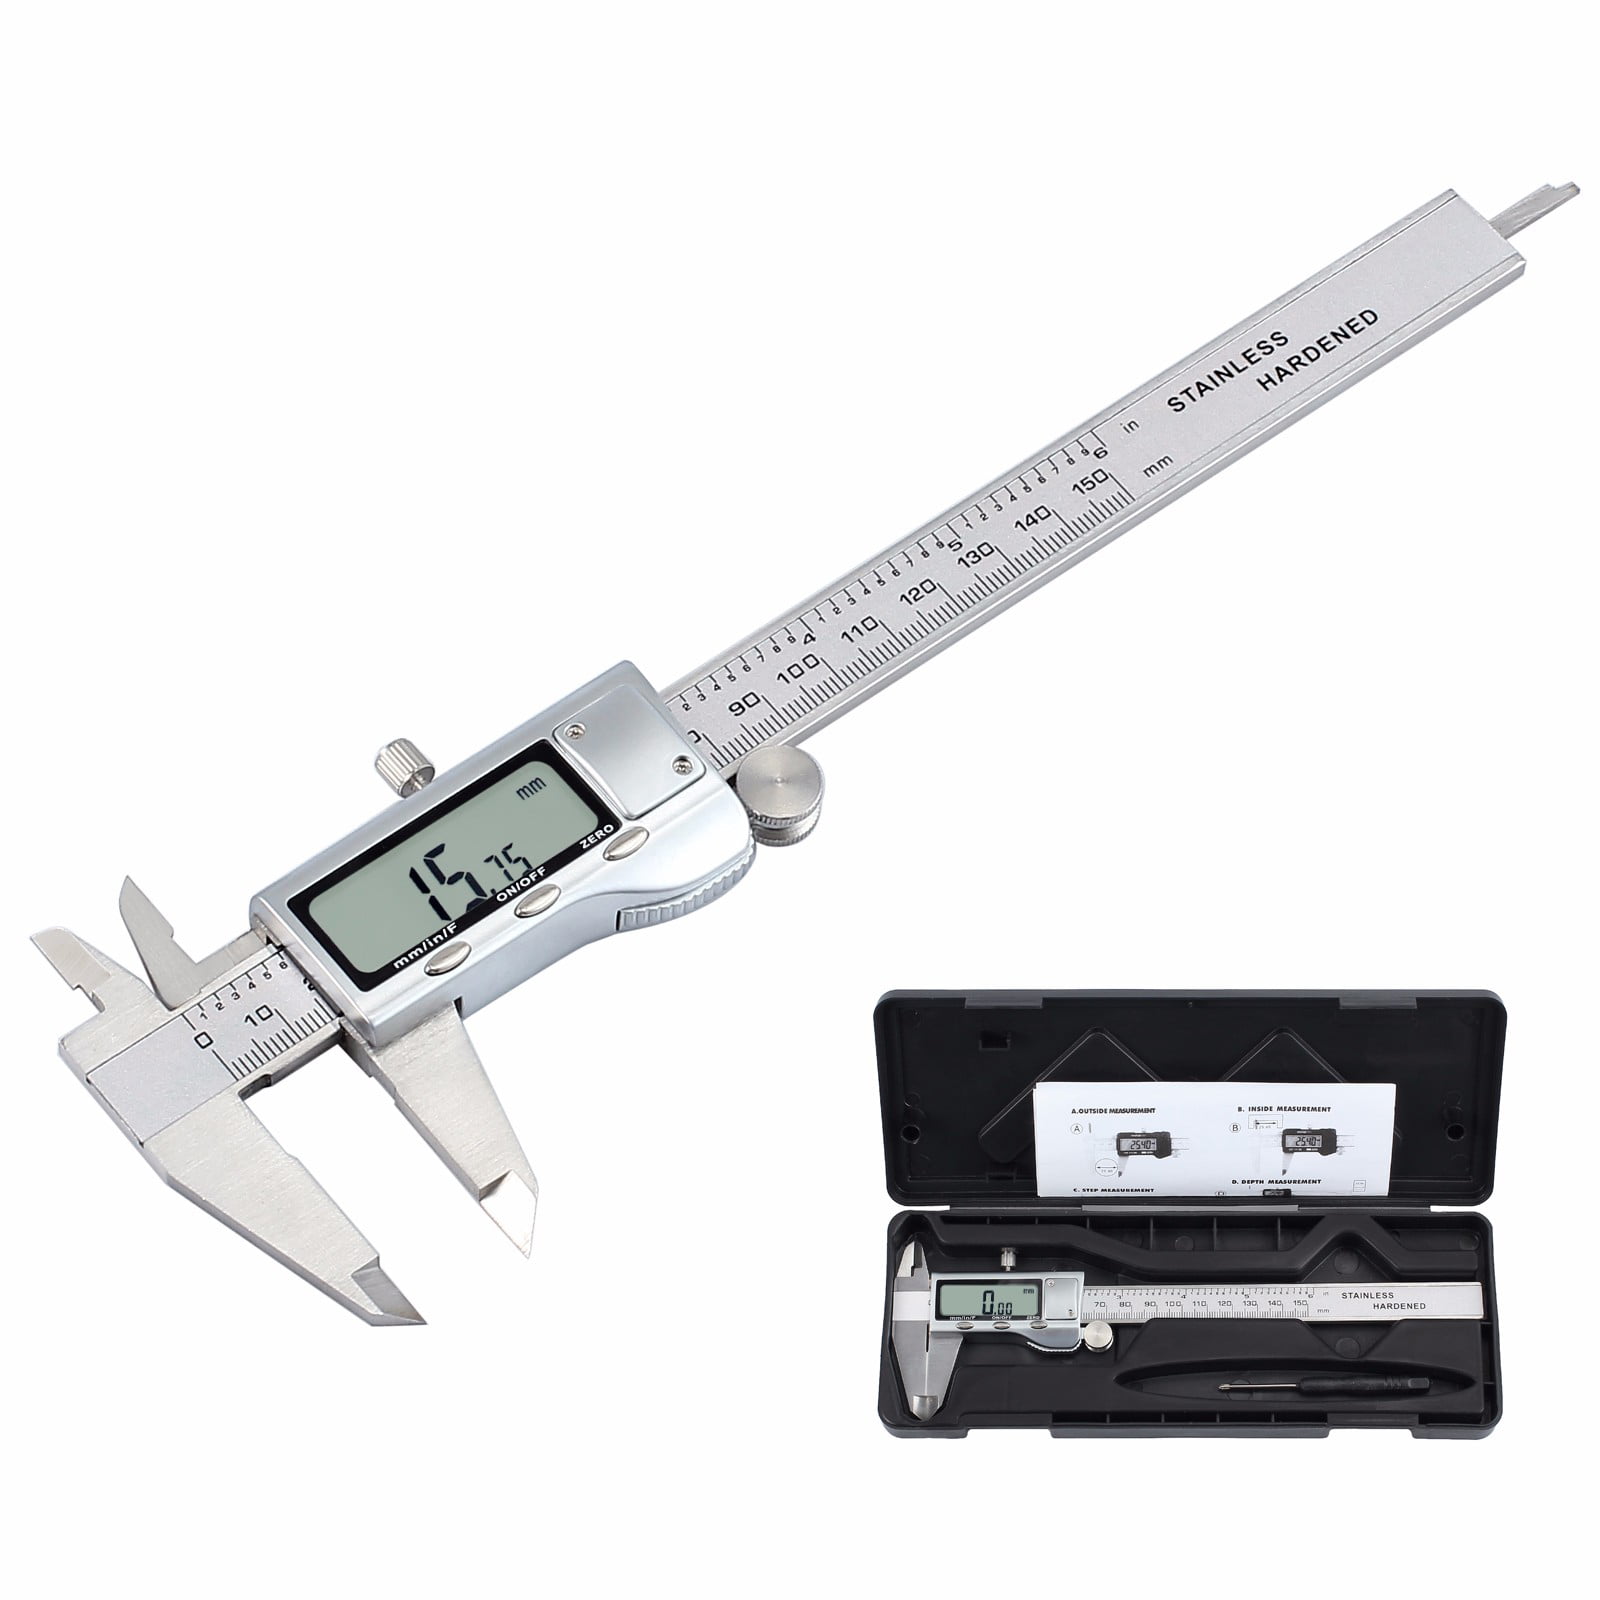 6 Inch/150mm Stainless Steel Vernier Caliper Micrometer Gauge Measure Tool li